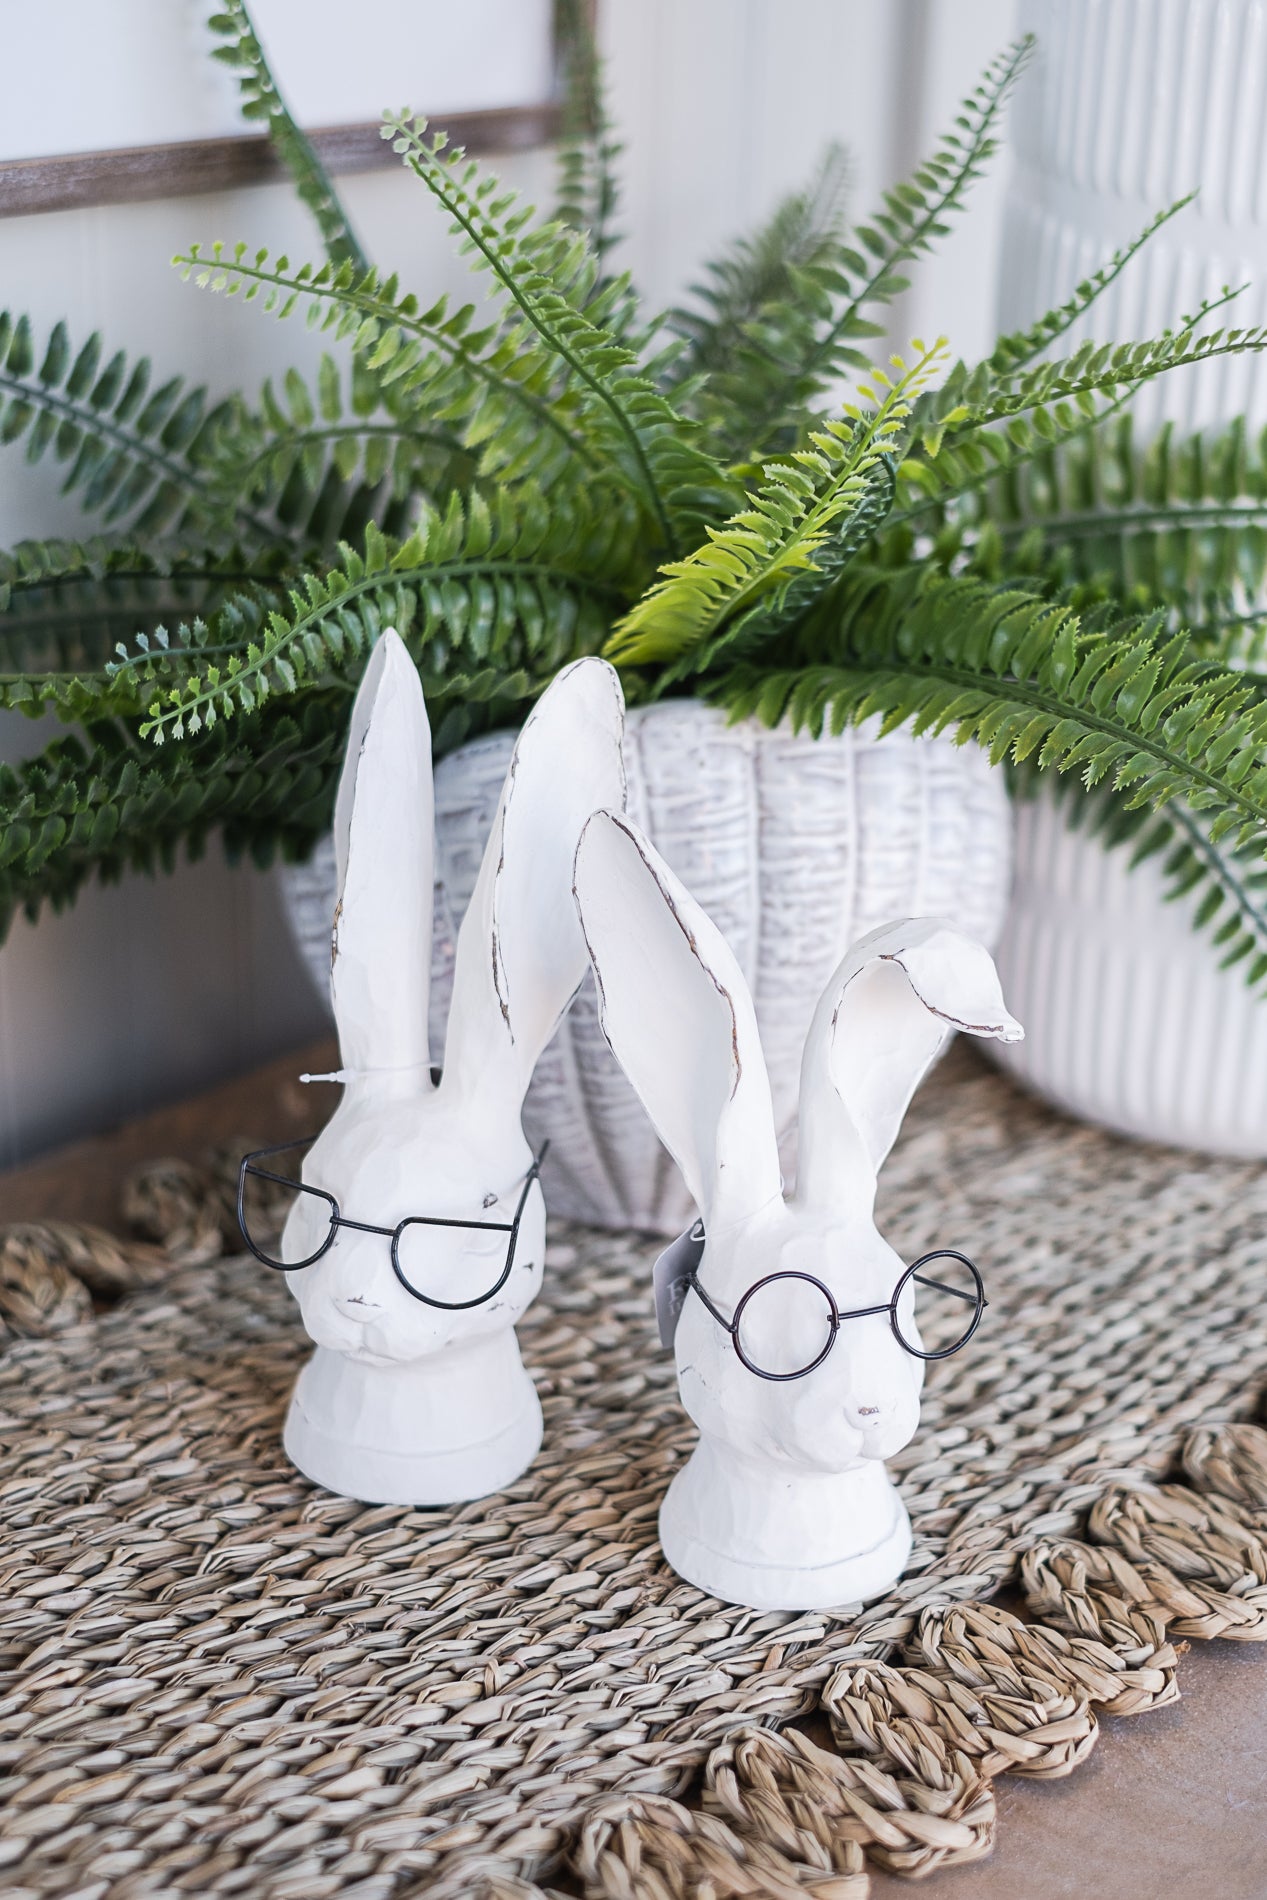 Raz 8" Rabbit with Glasses  4311109  Assorted